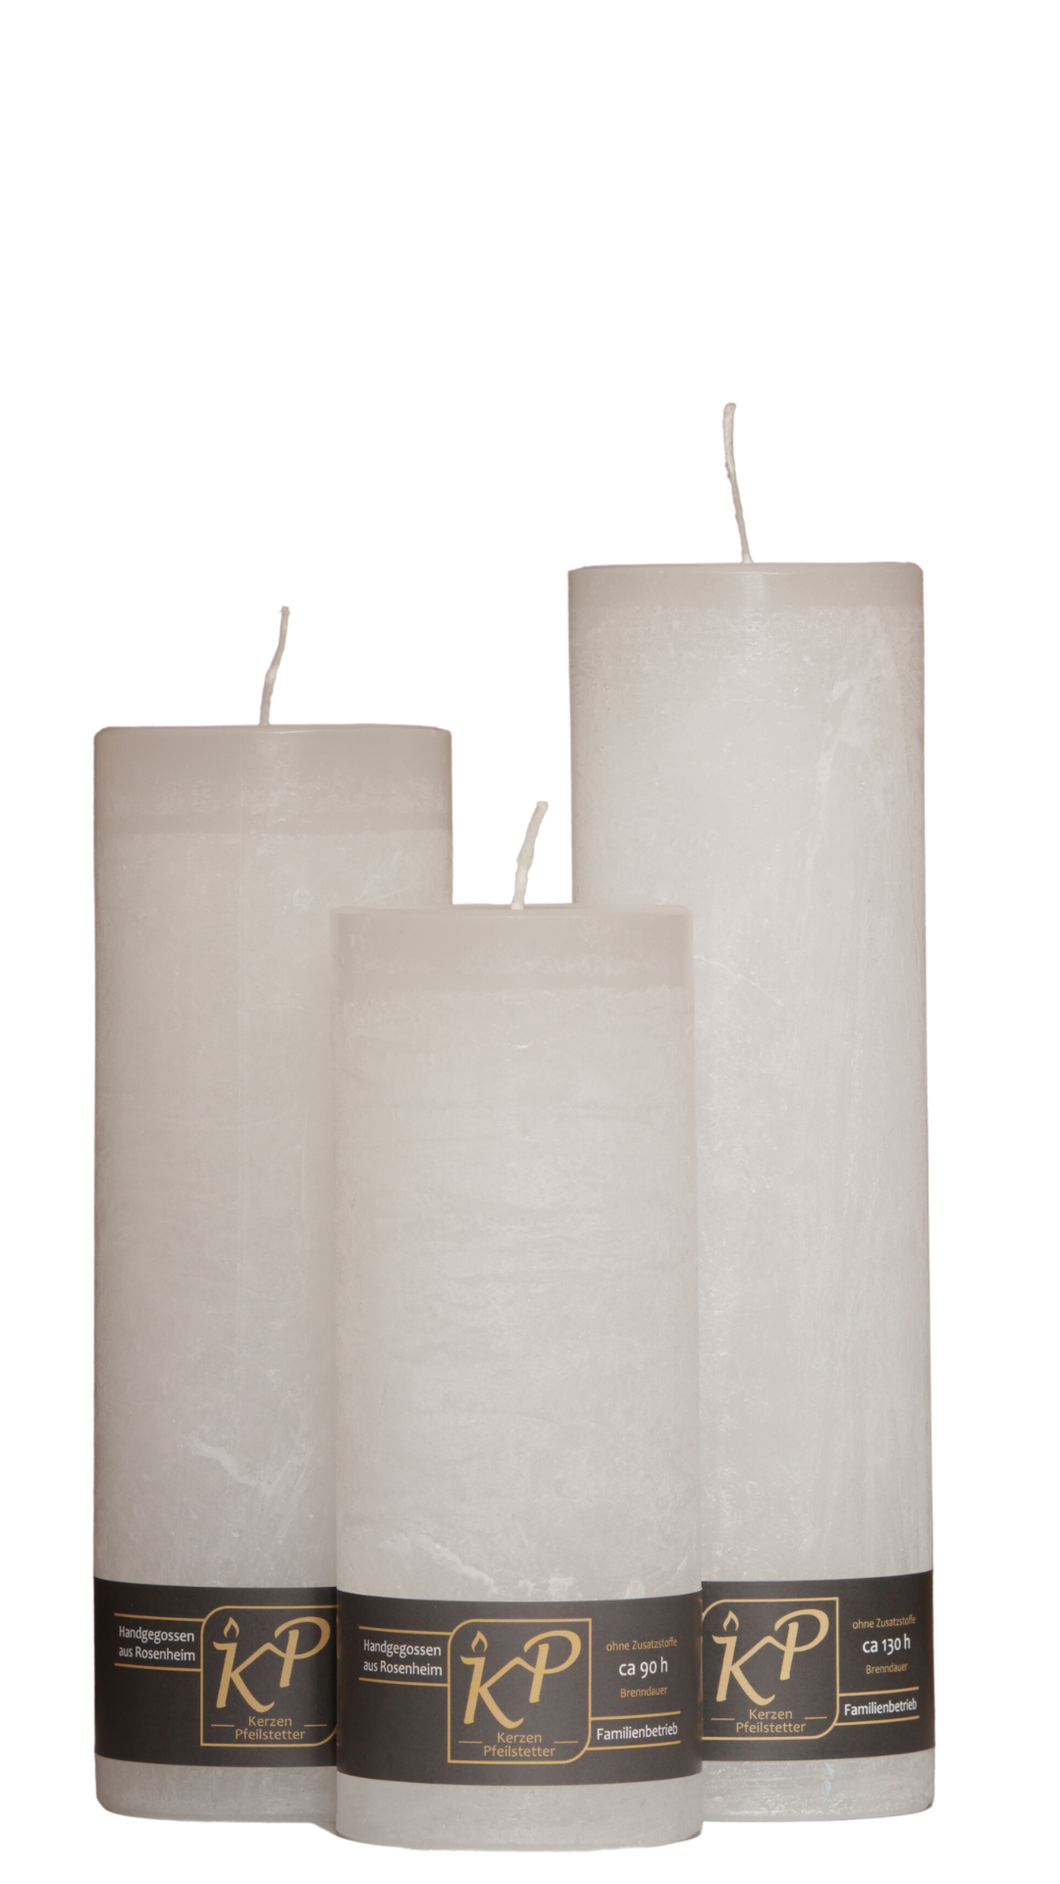 Dalina flower candle | white | ~ 130h burning time